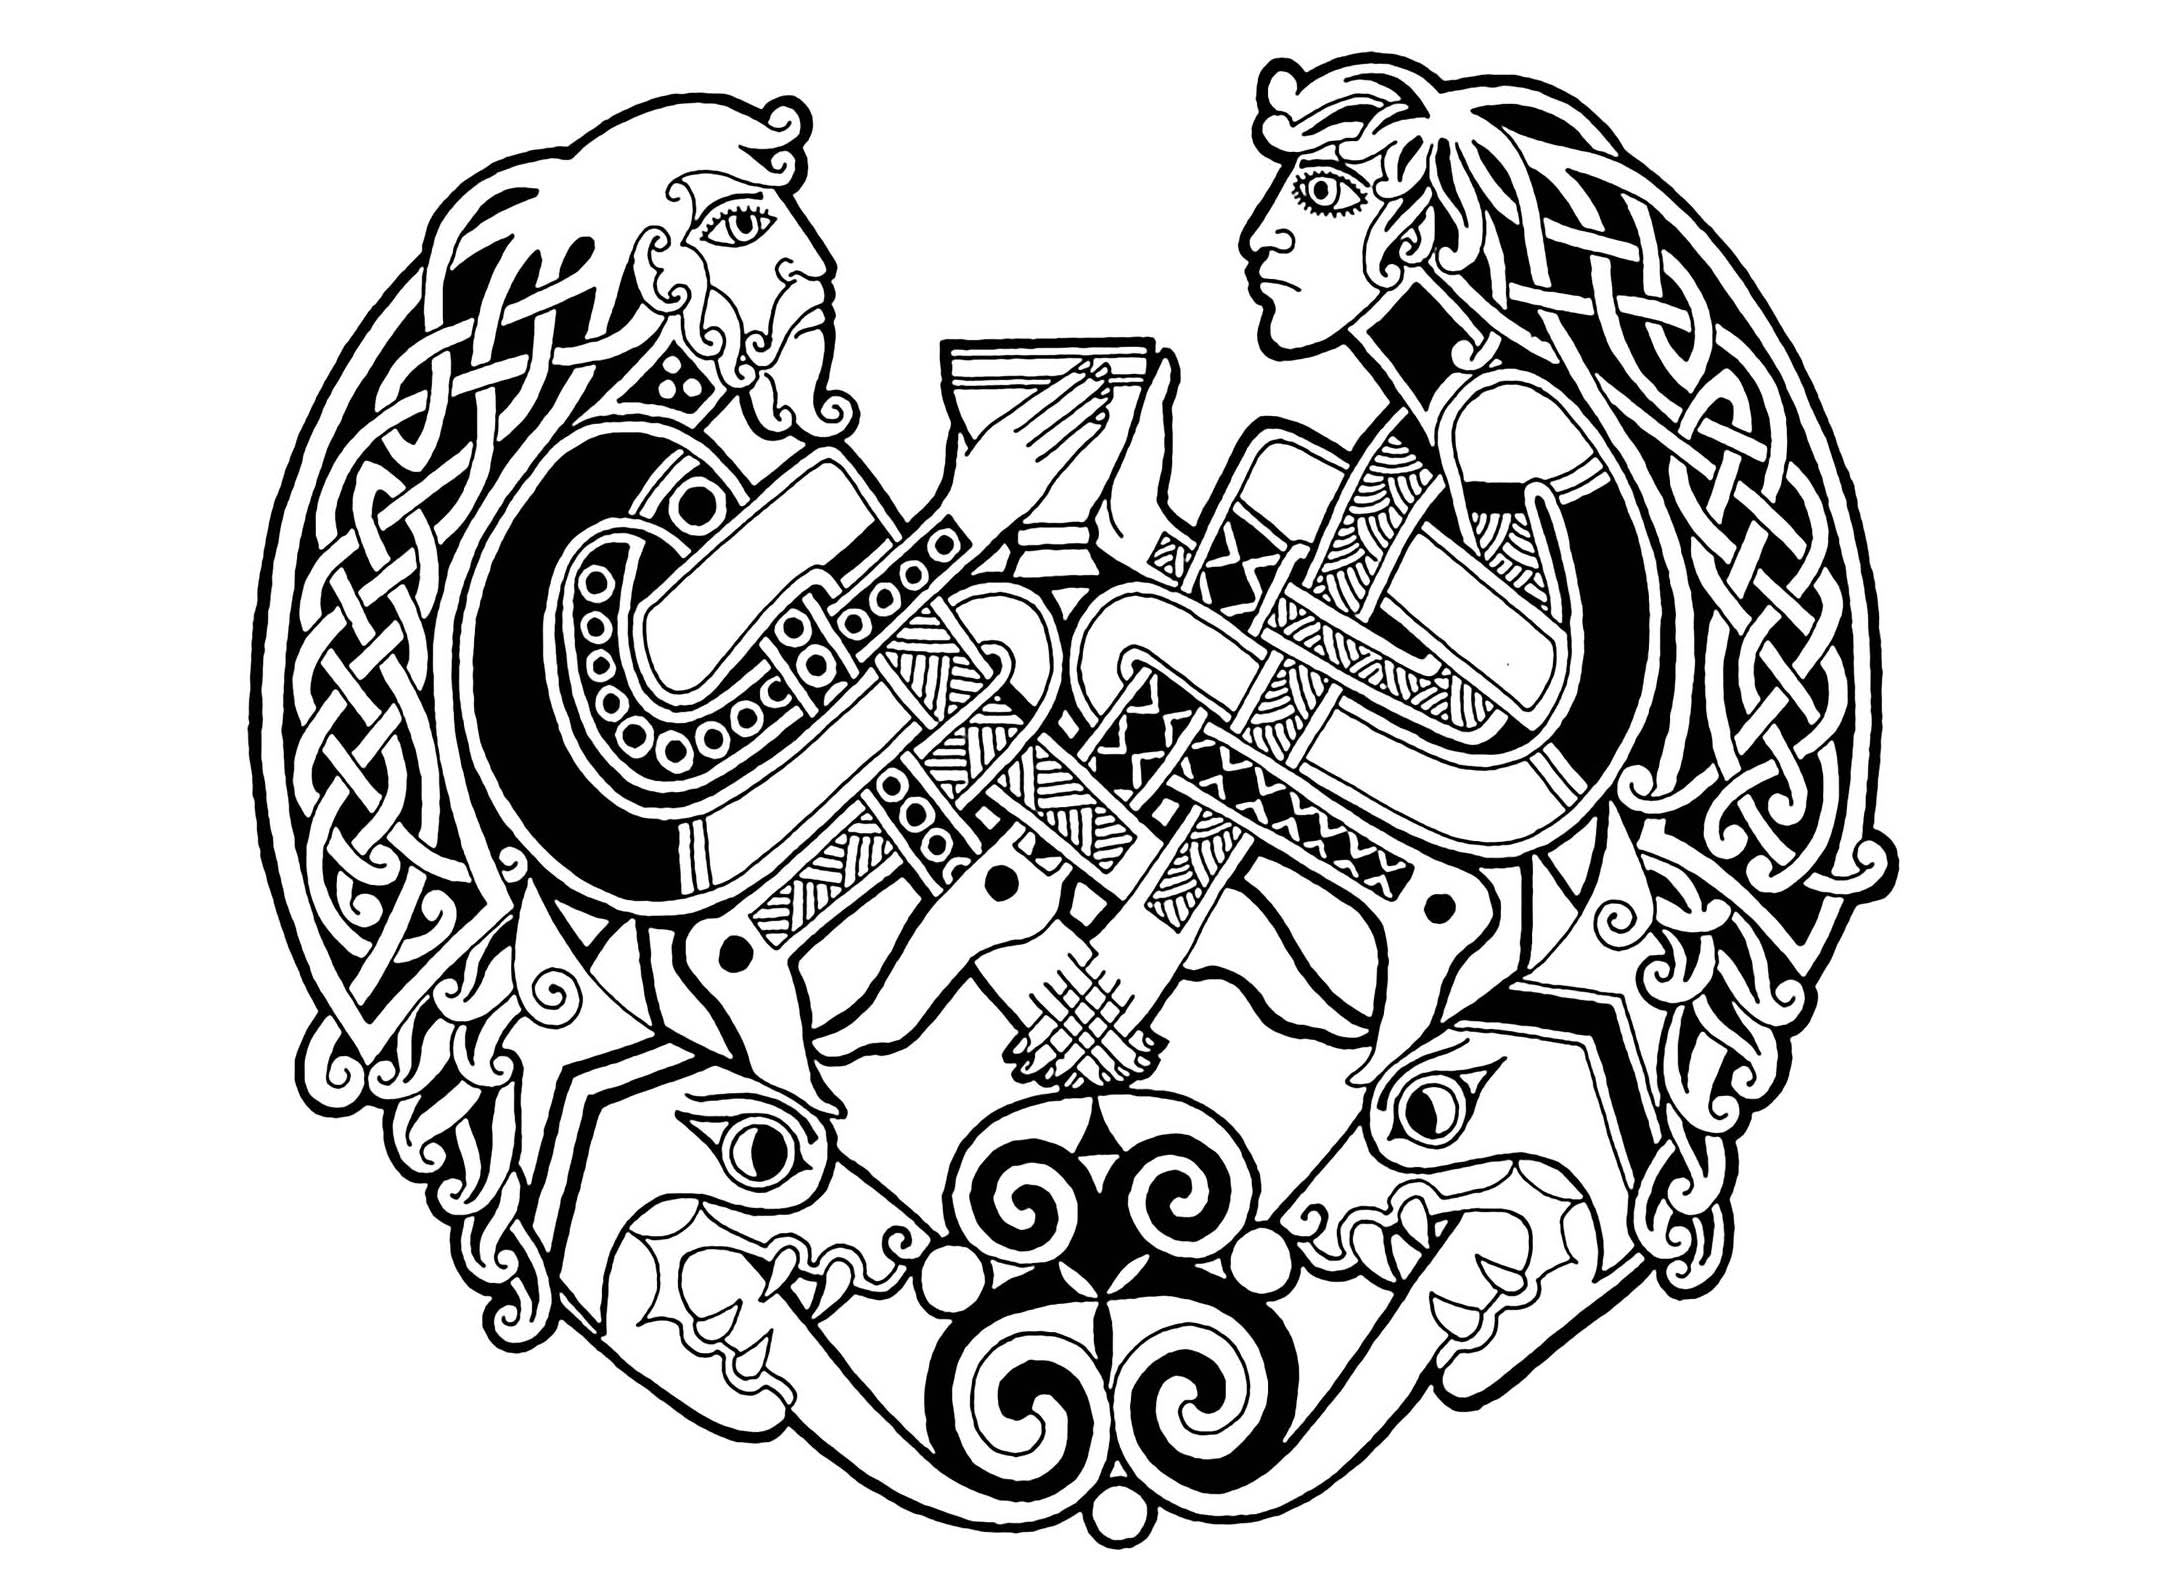 Celtic Art design : 2 men / 2 animals